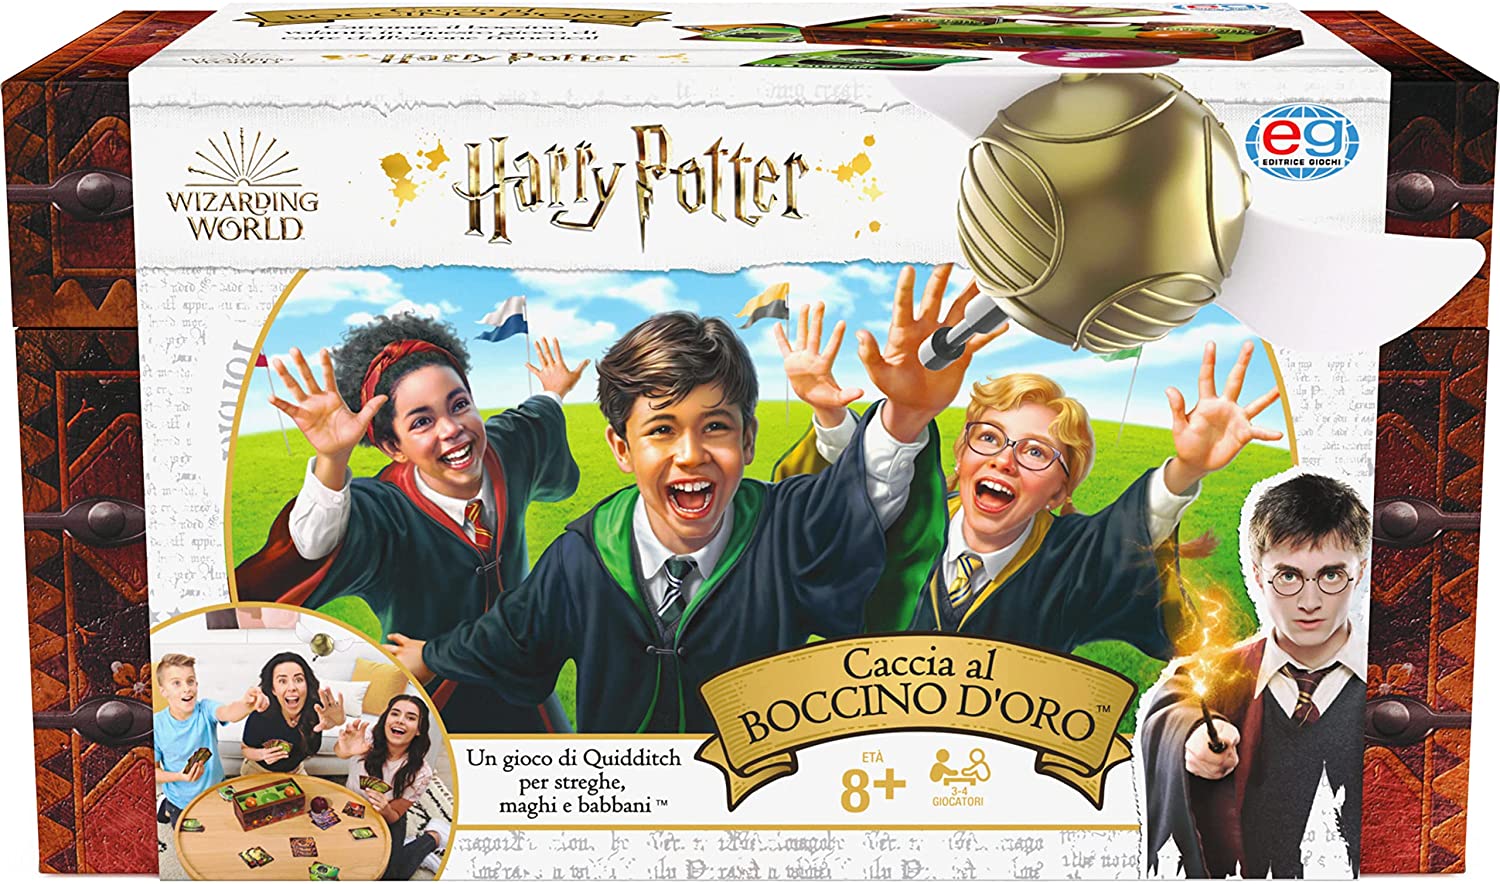 Harry Potter Caccia al Boccino D'oro